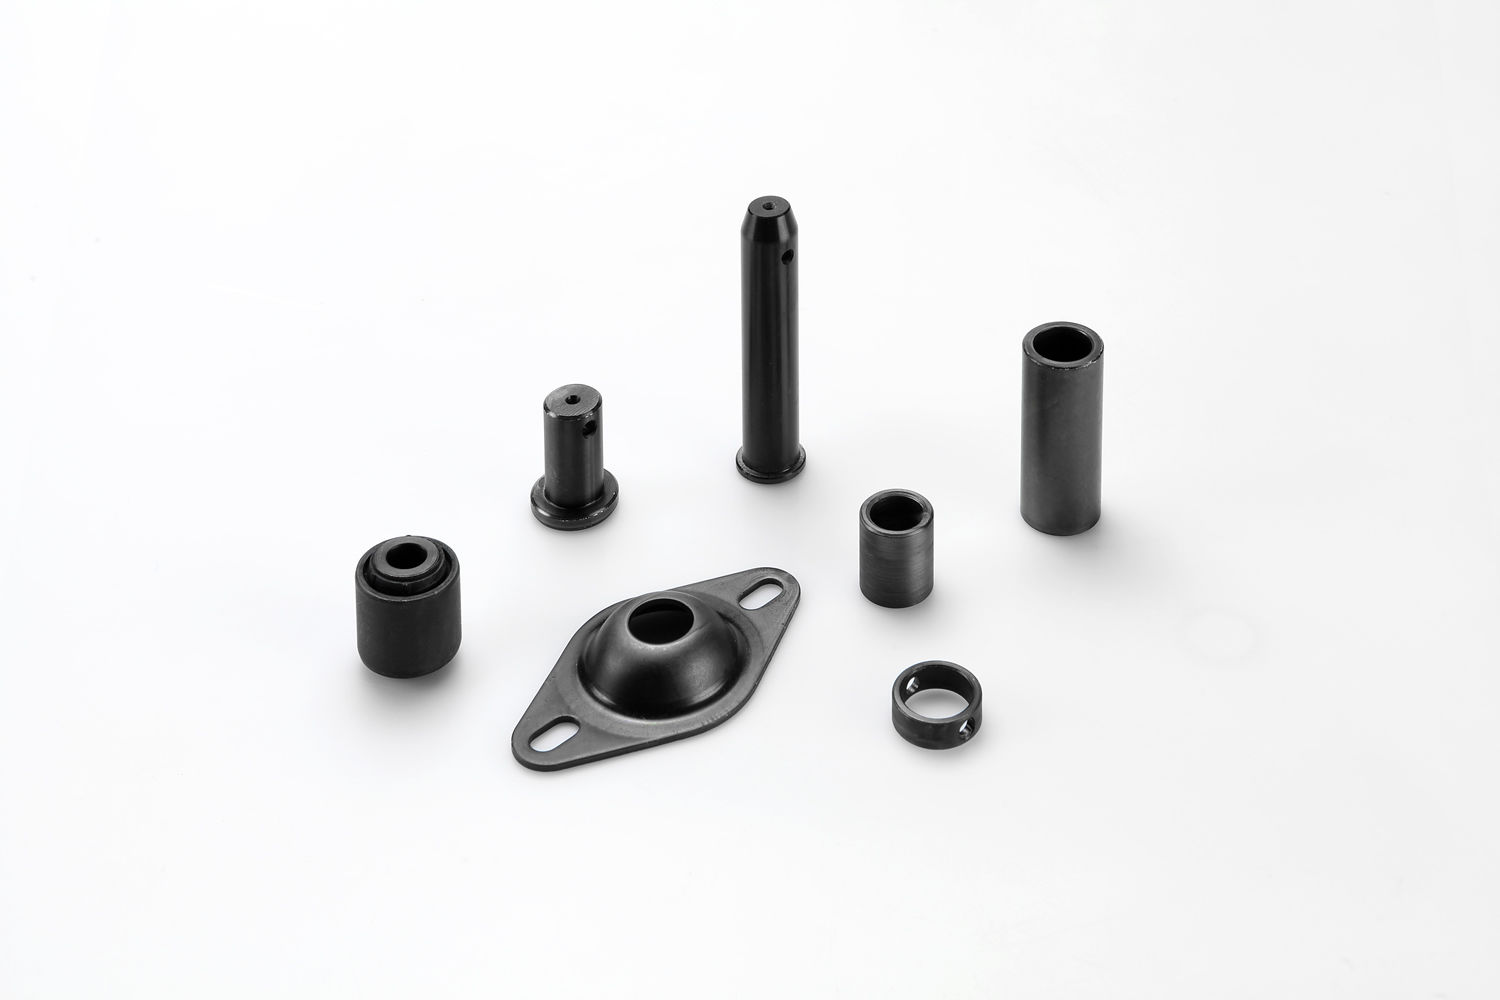 Piezas metálicas con acabado negro, capa de zinc níquel más un pasivado negro y sellado para aumentar la resistencia a la corrosión.